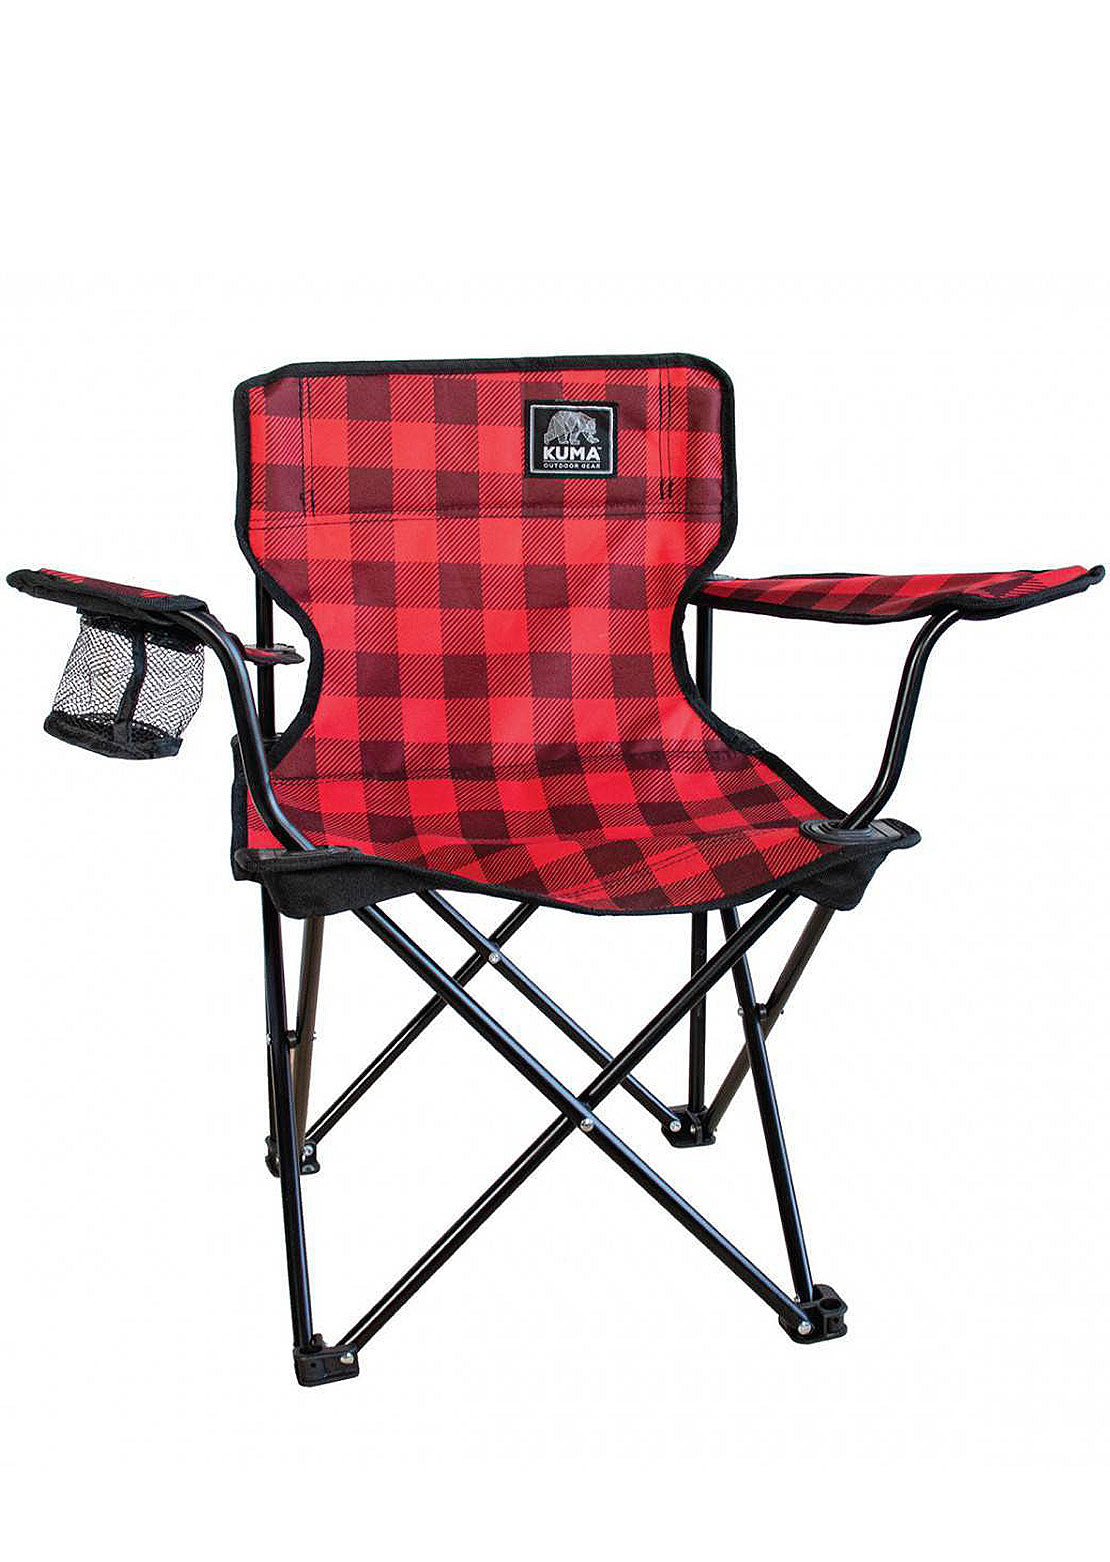 Kuma Outdoor Gear Junior Cub Chair Red/Black Plaid